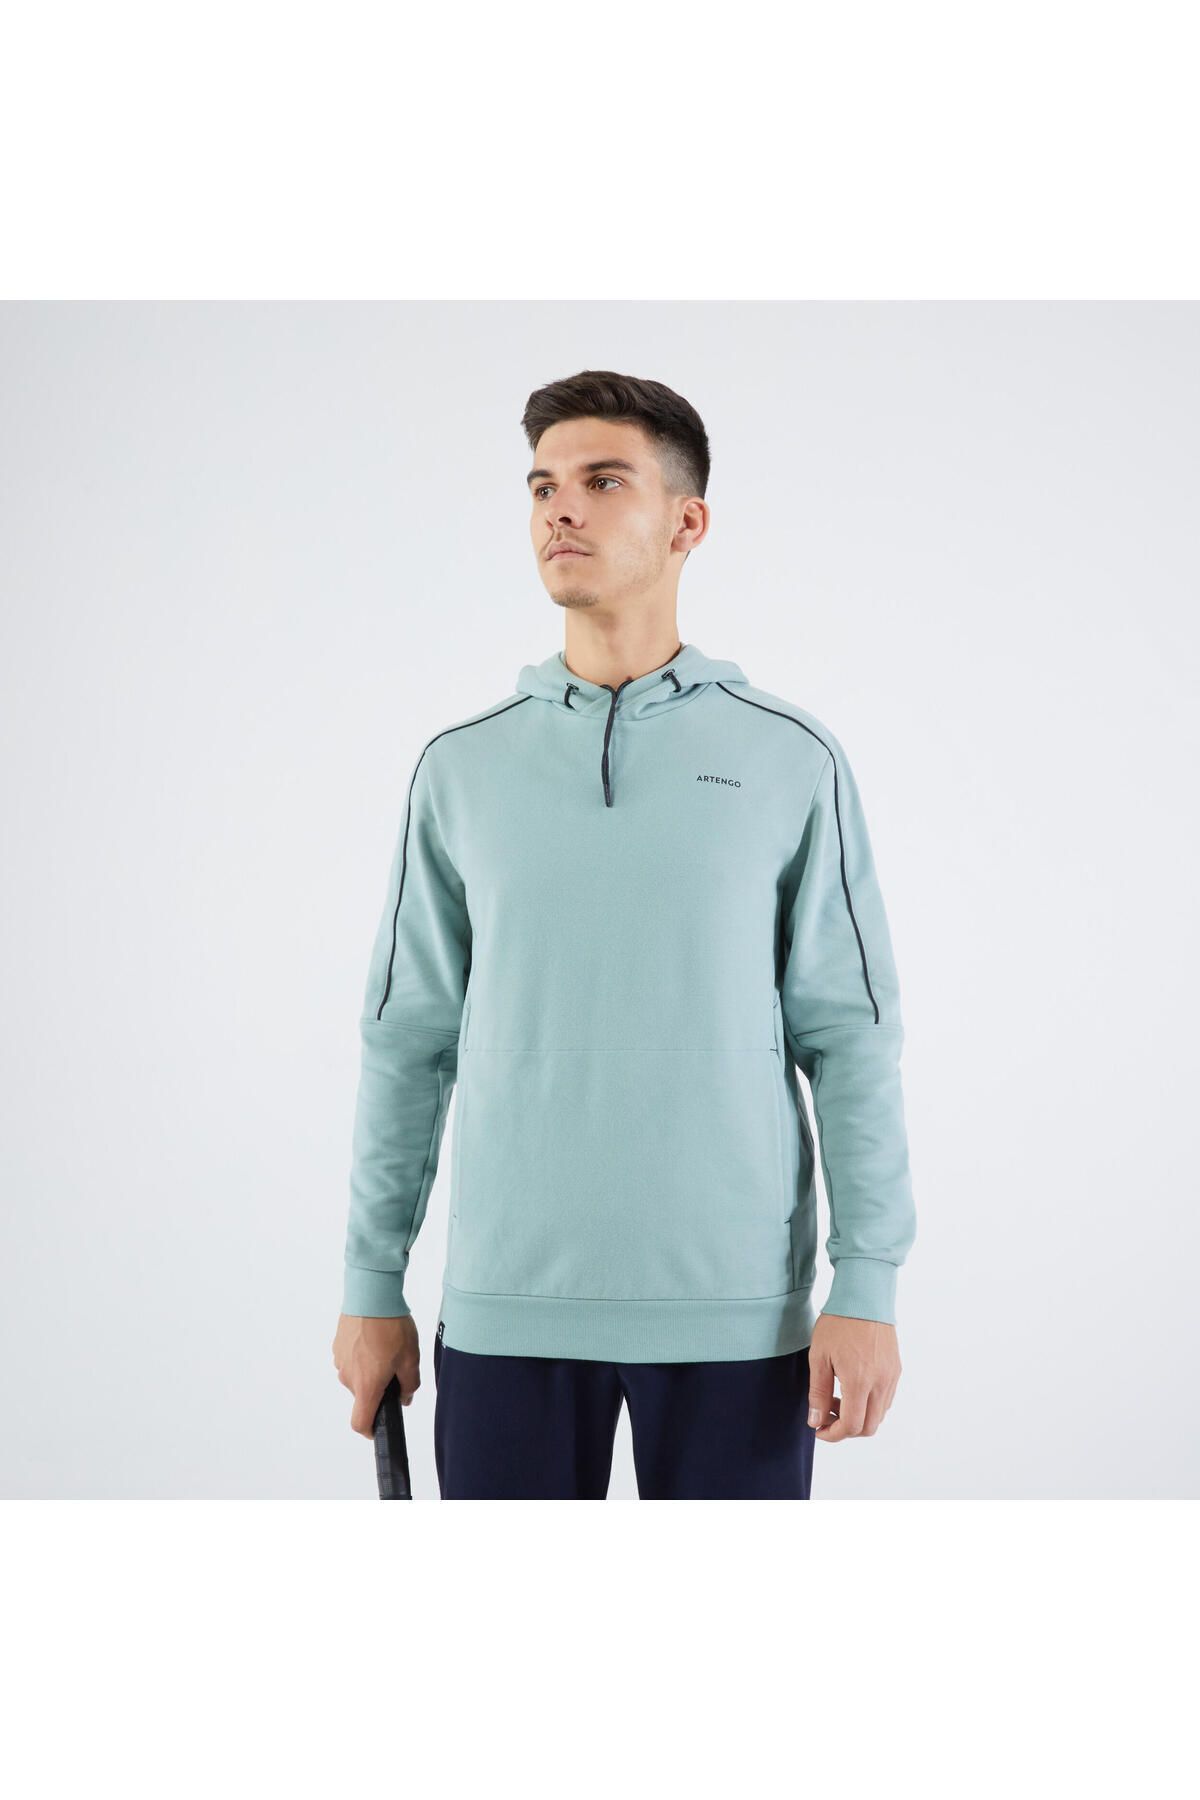 Decathlon Erkek Kapüşonlu Tenis Sweatshirtü - Açık Yeşil - Soft